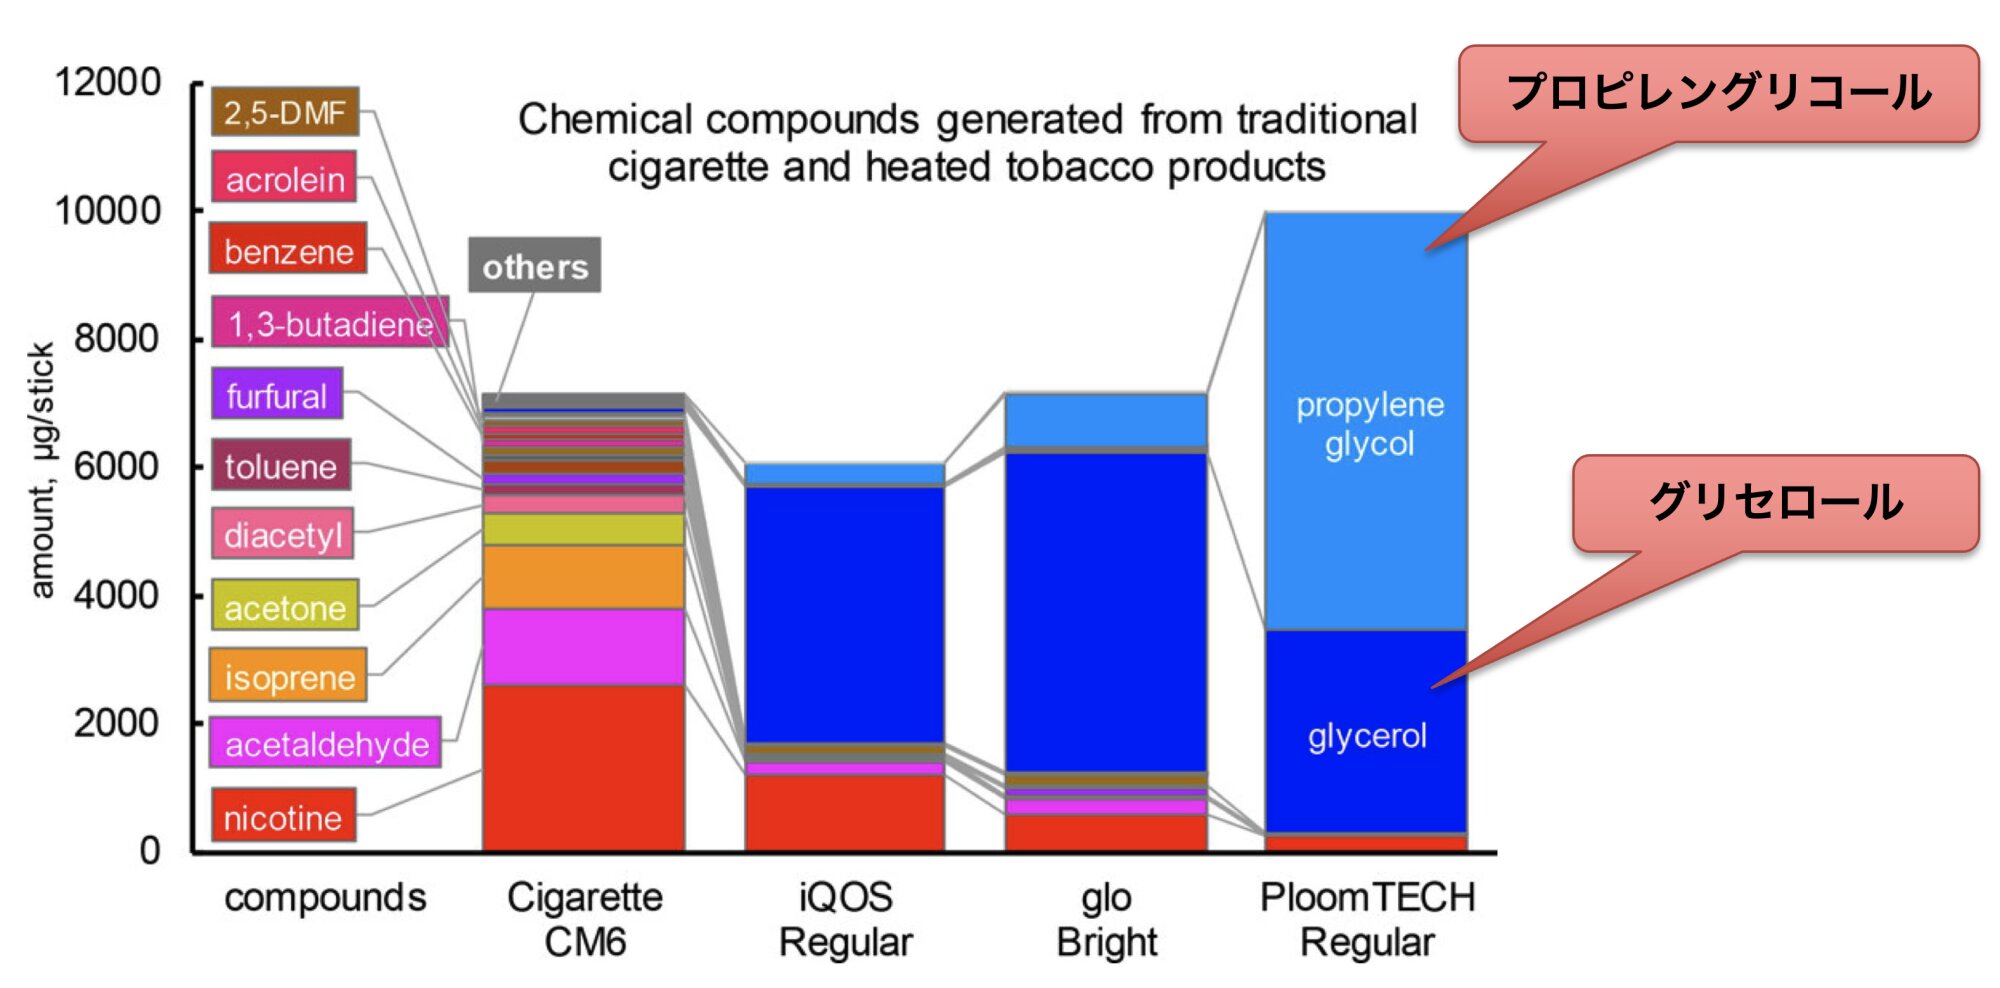 紙巻きタバコと加熱式タバコの物質比較（2018年のデータ）。文献の図に筆者が加筆